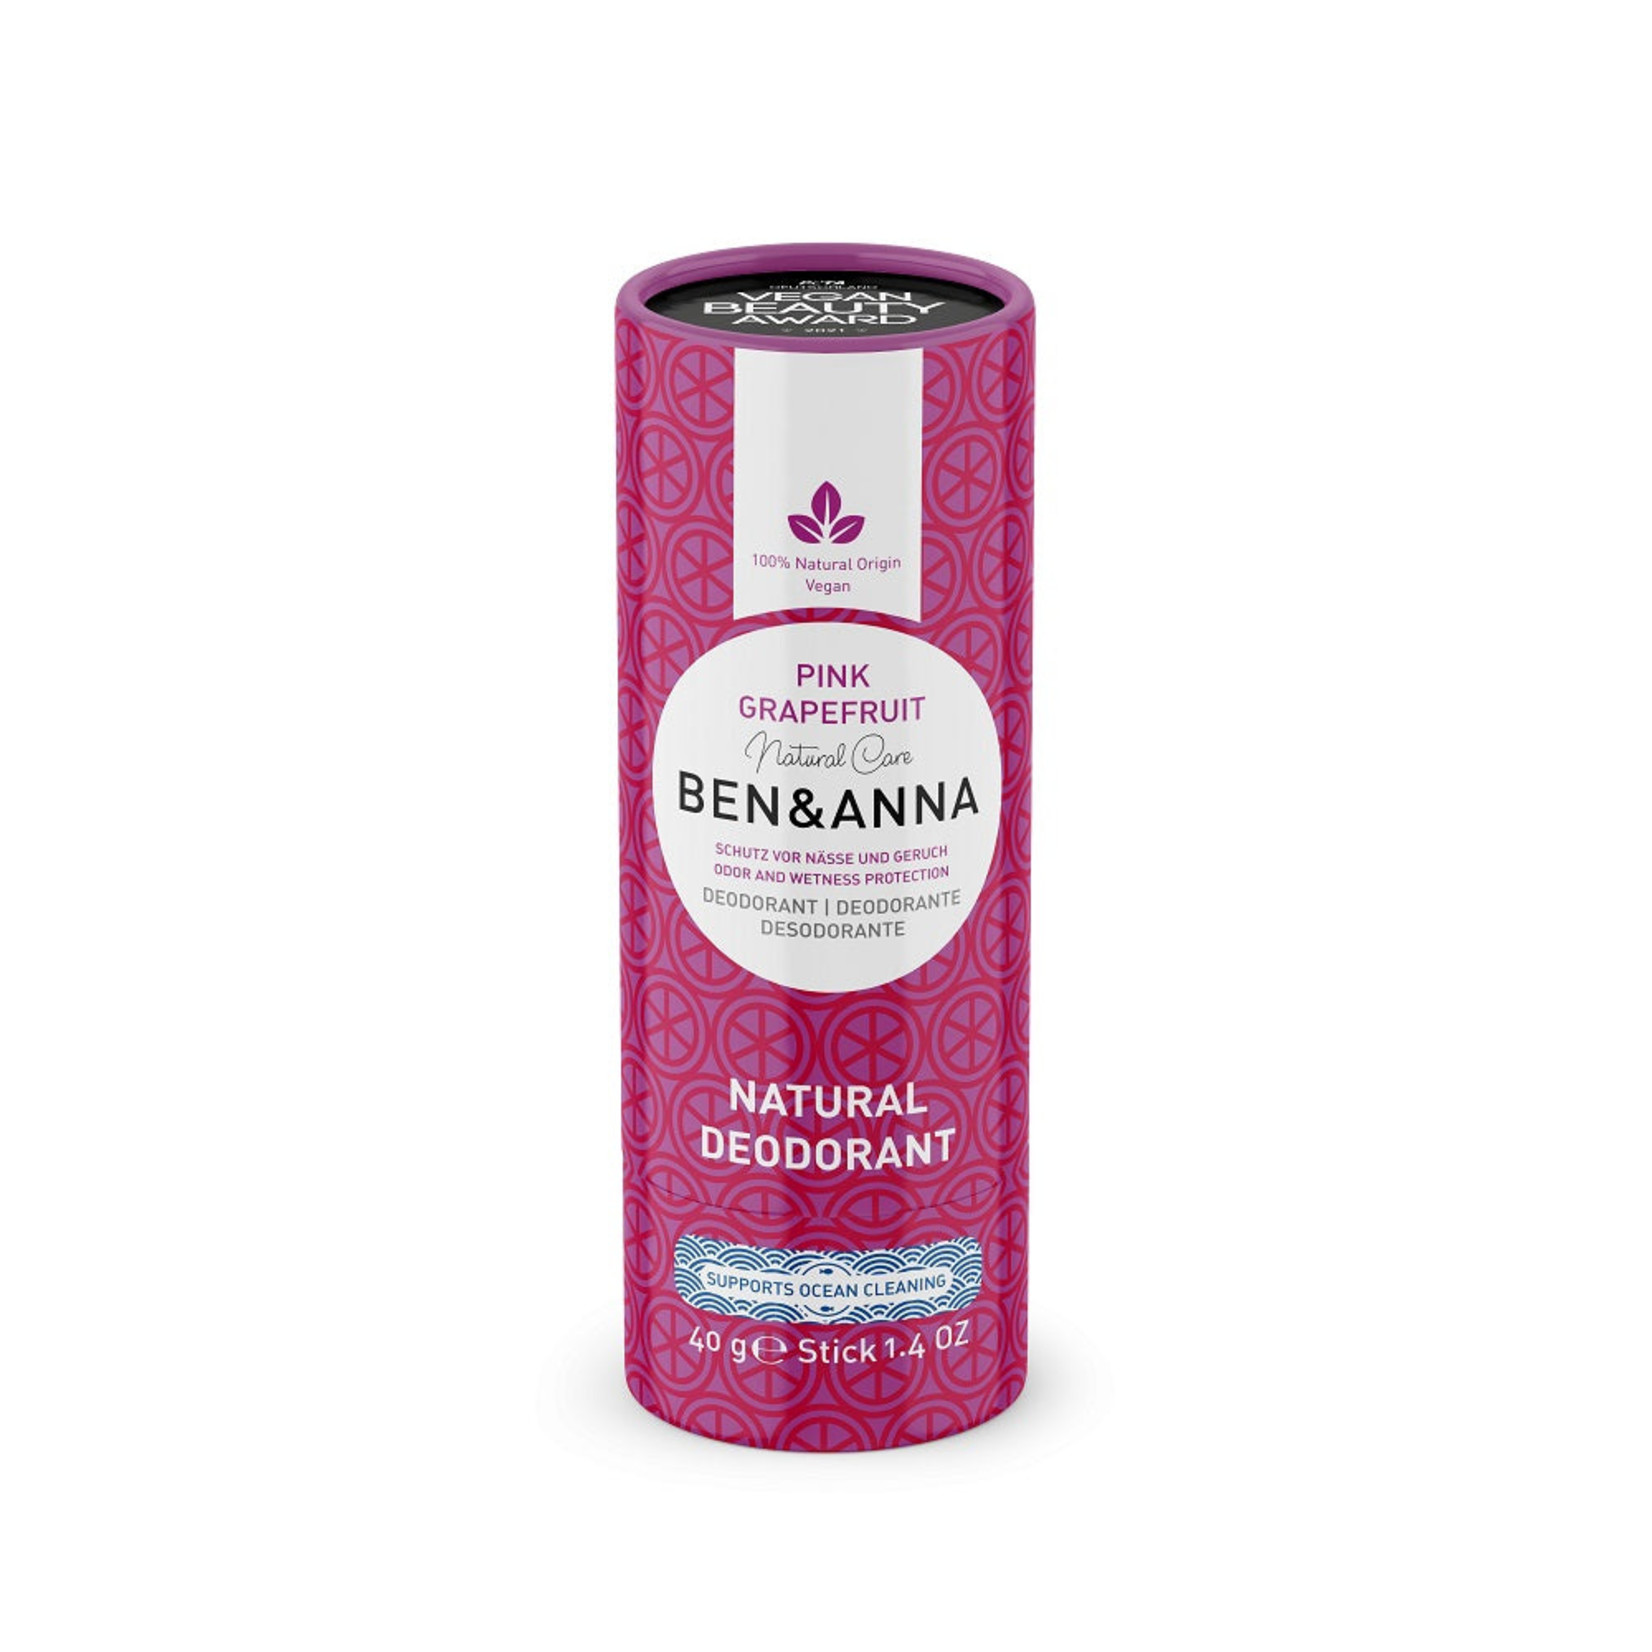 BEN & ANNA Natuurlijke Deodorant - 40 G - pink grapefruit